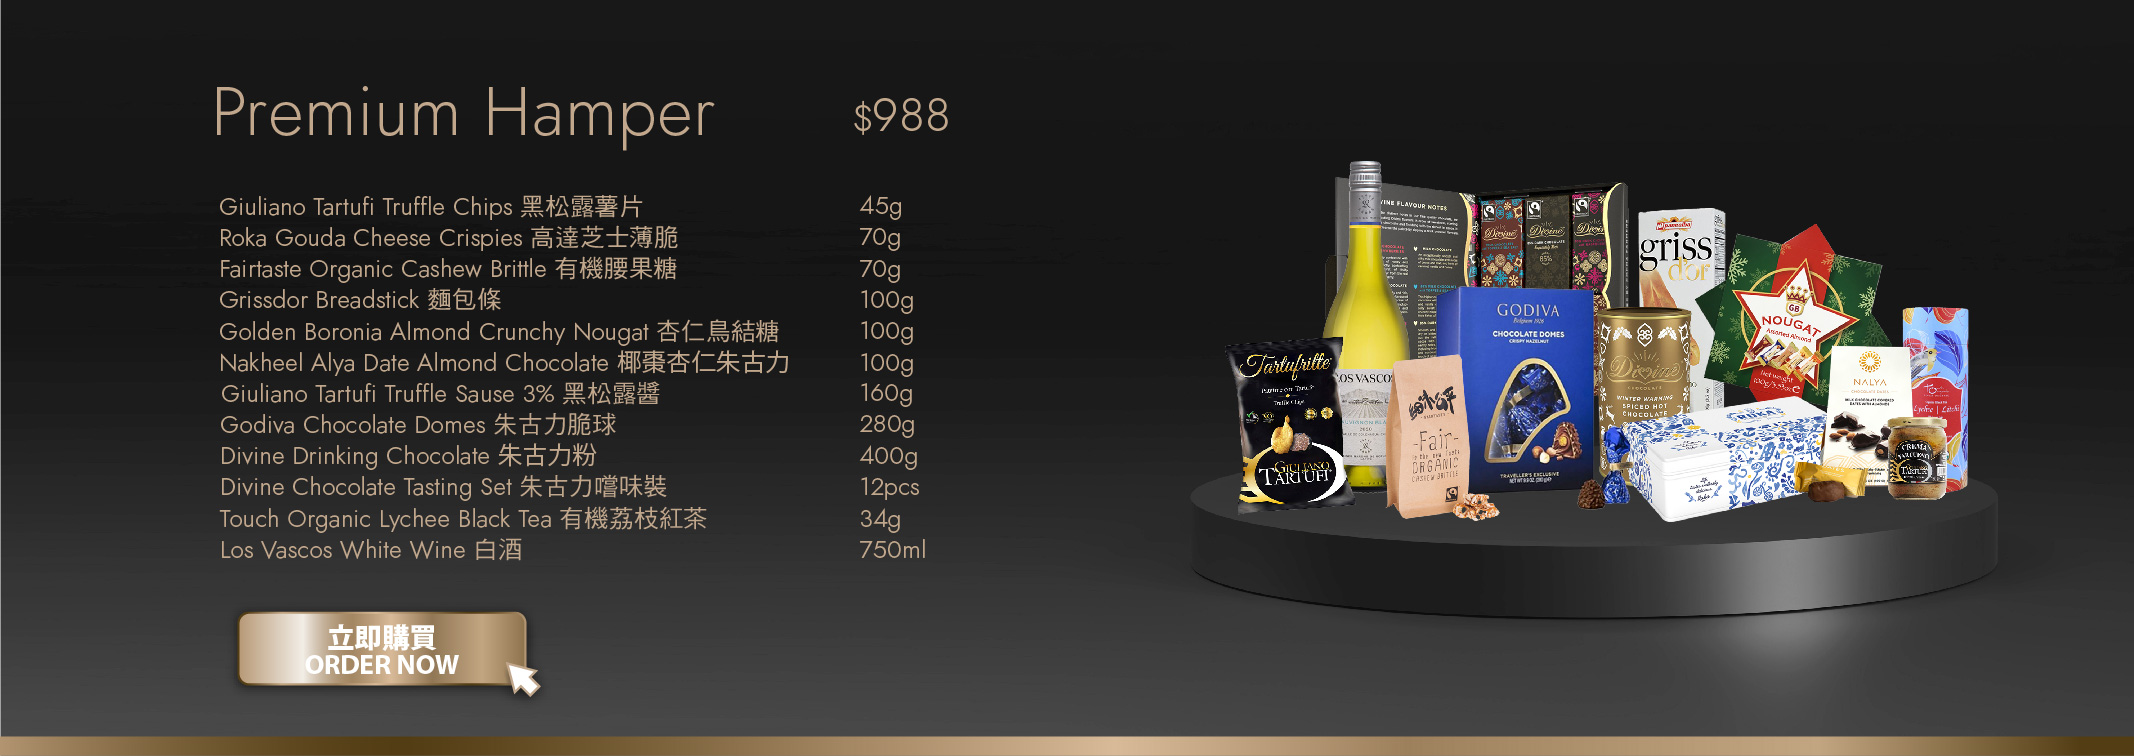 Gourmet Hampers 2 - Premium Hamper HK$988